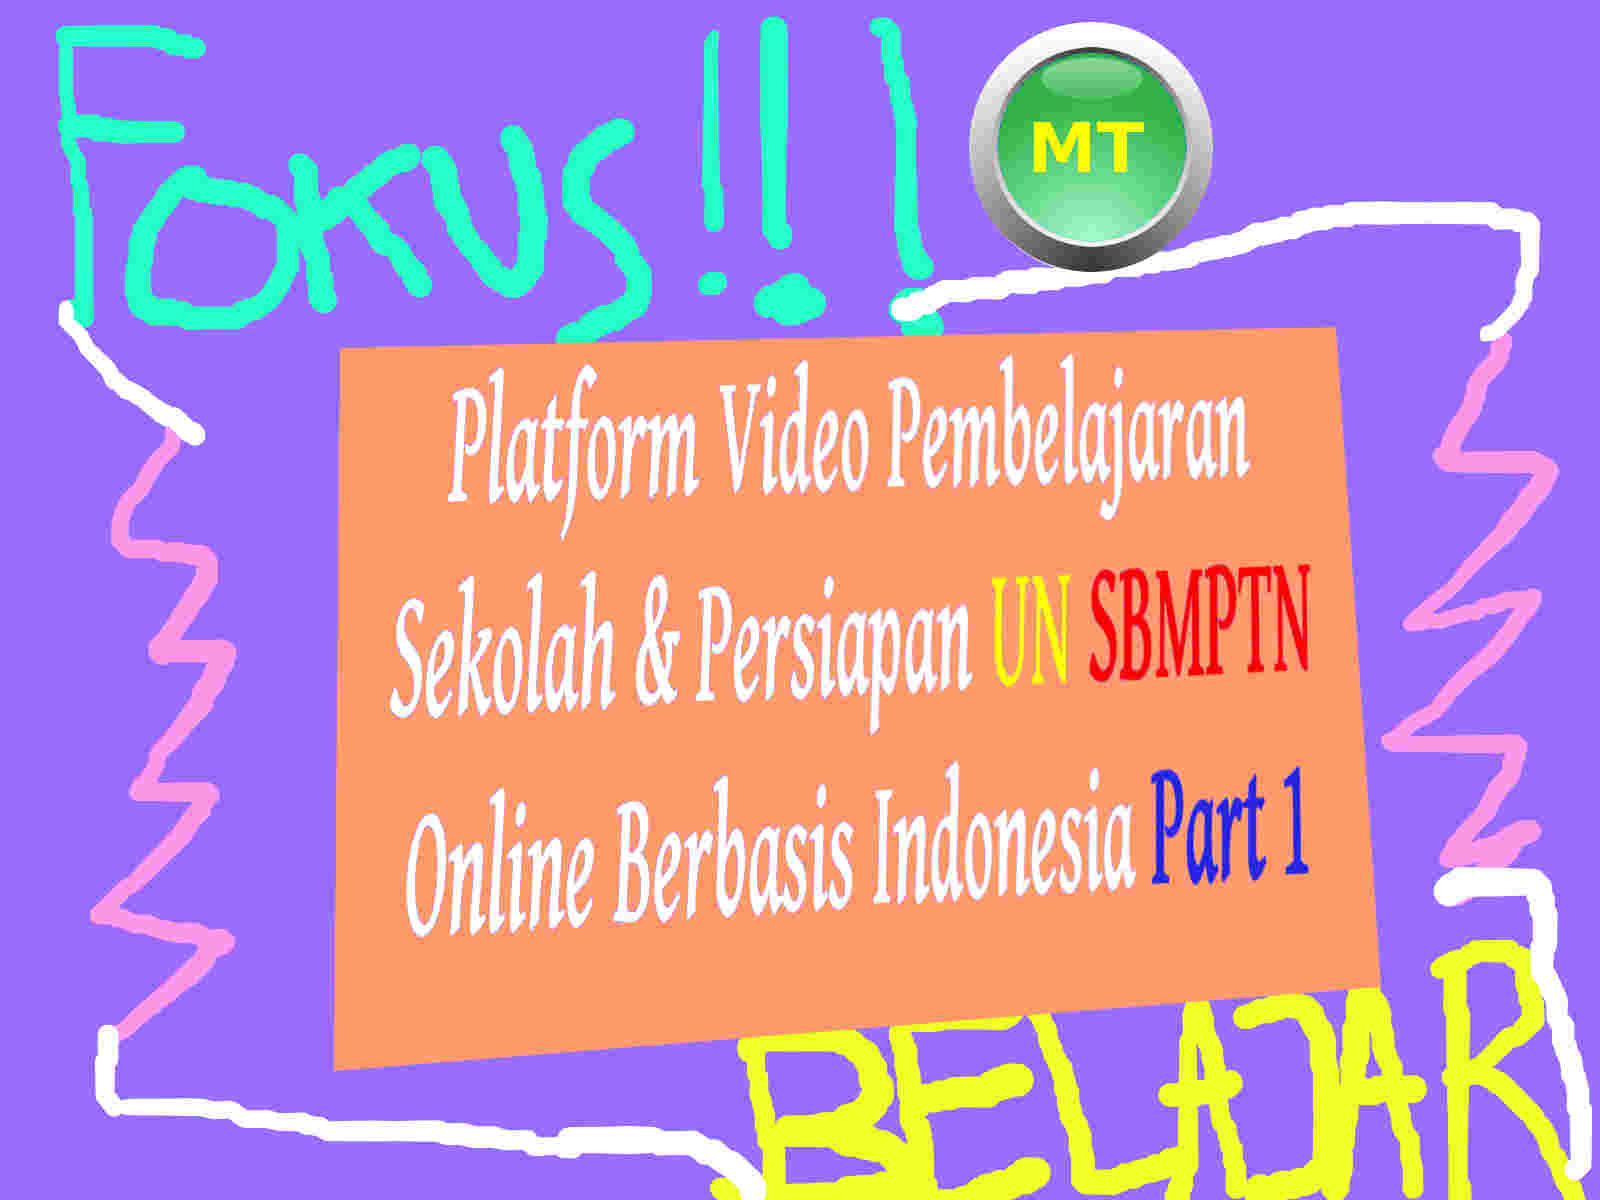 Platform Video Pembelajaran Sekolah & Persiapan UN SBMPTN line Berbasis Indonesia Part